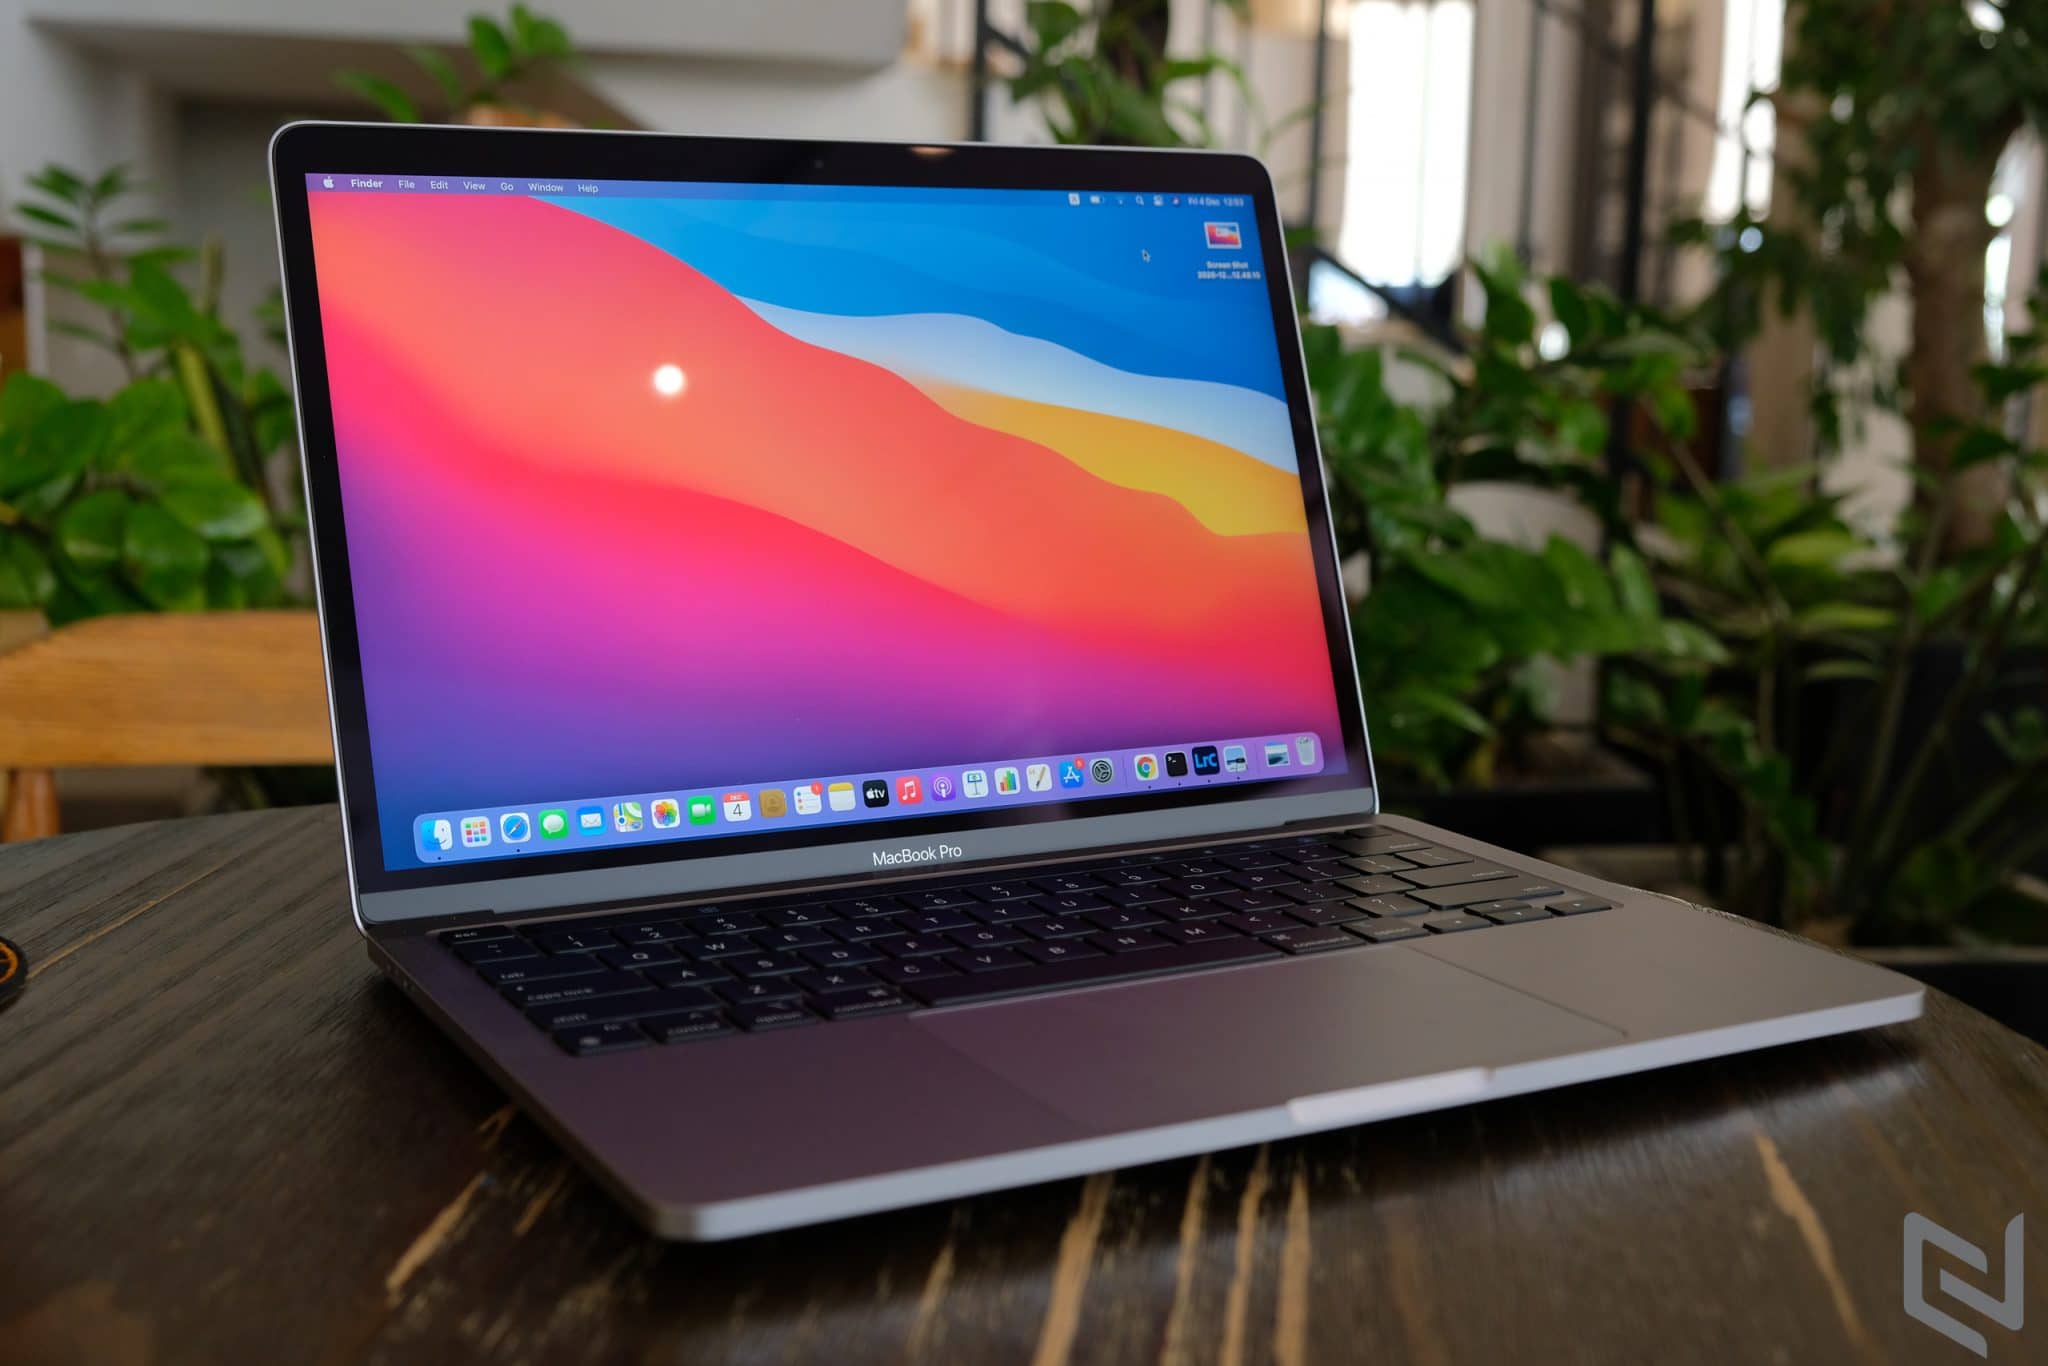 Trên tay MacBook Pro chạy chip M1: Vẫn đang rất hot